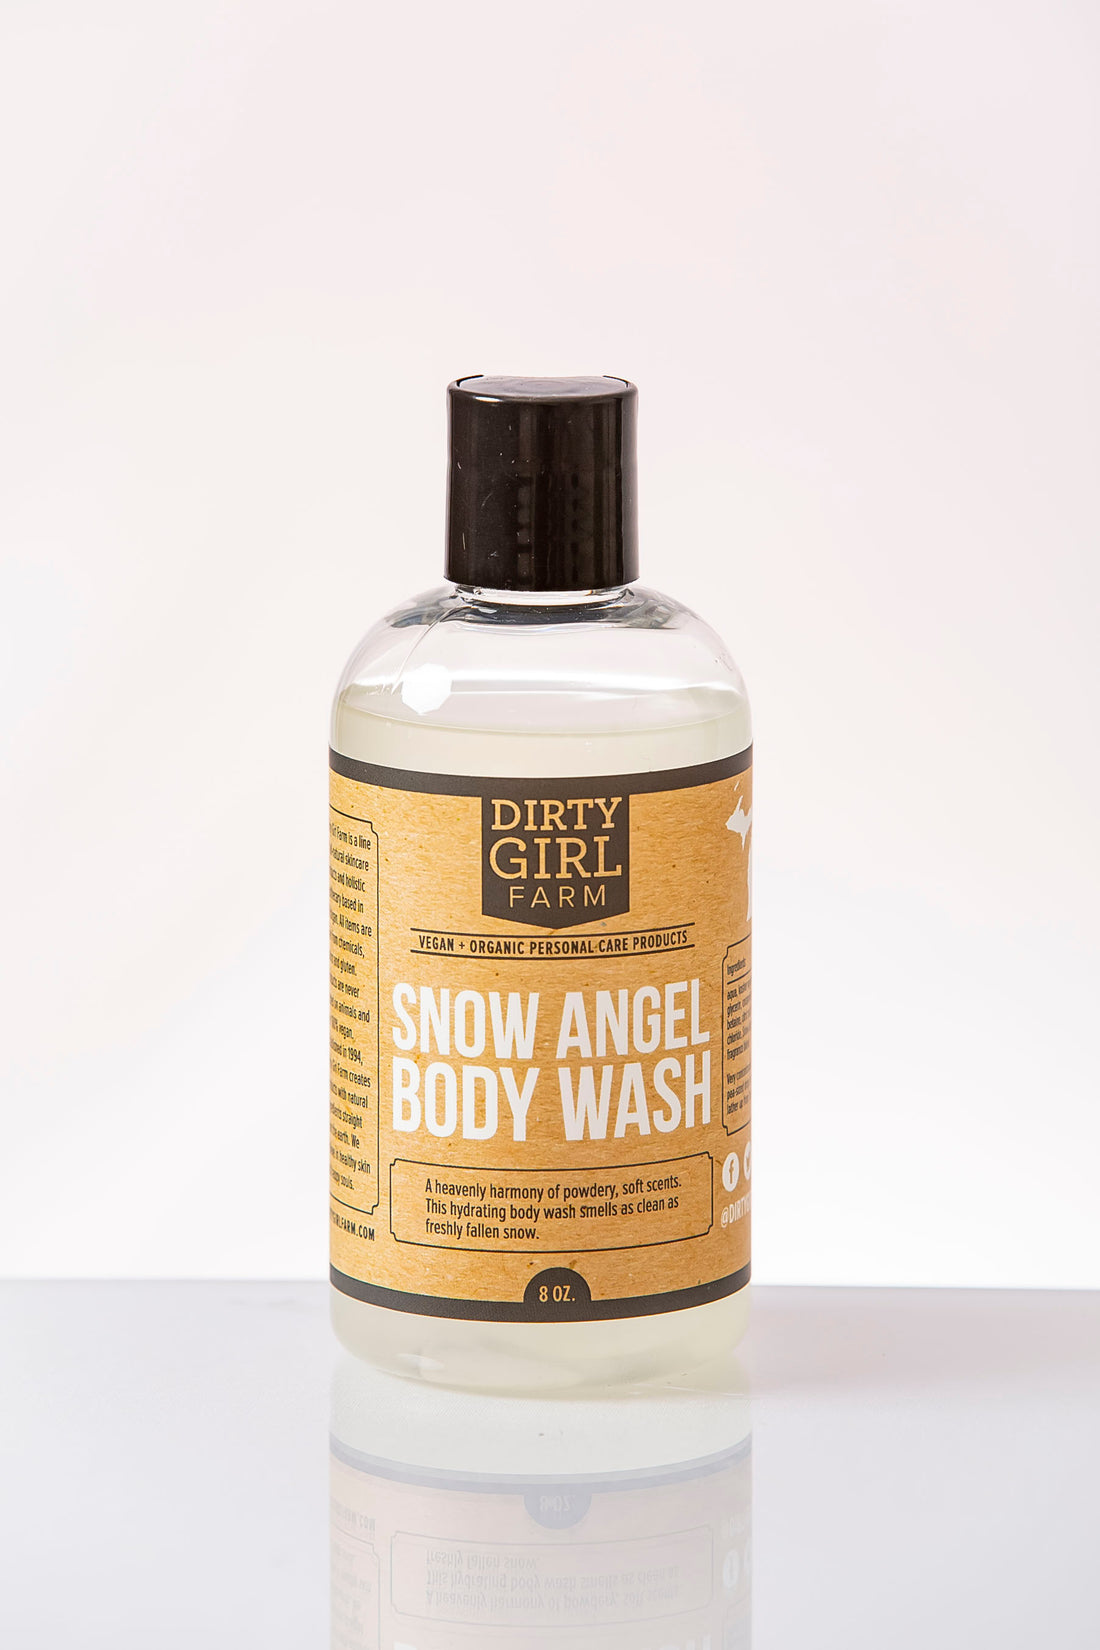 Snow Angel Body Wash